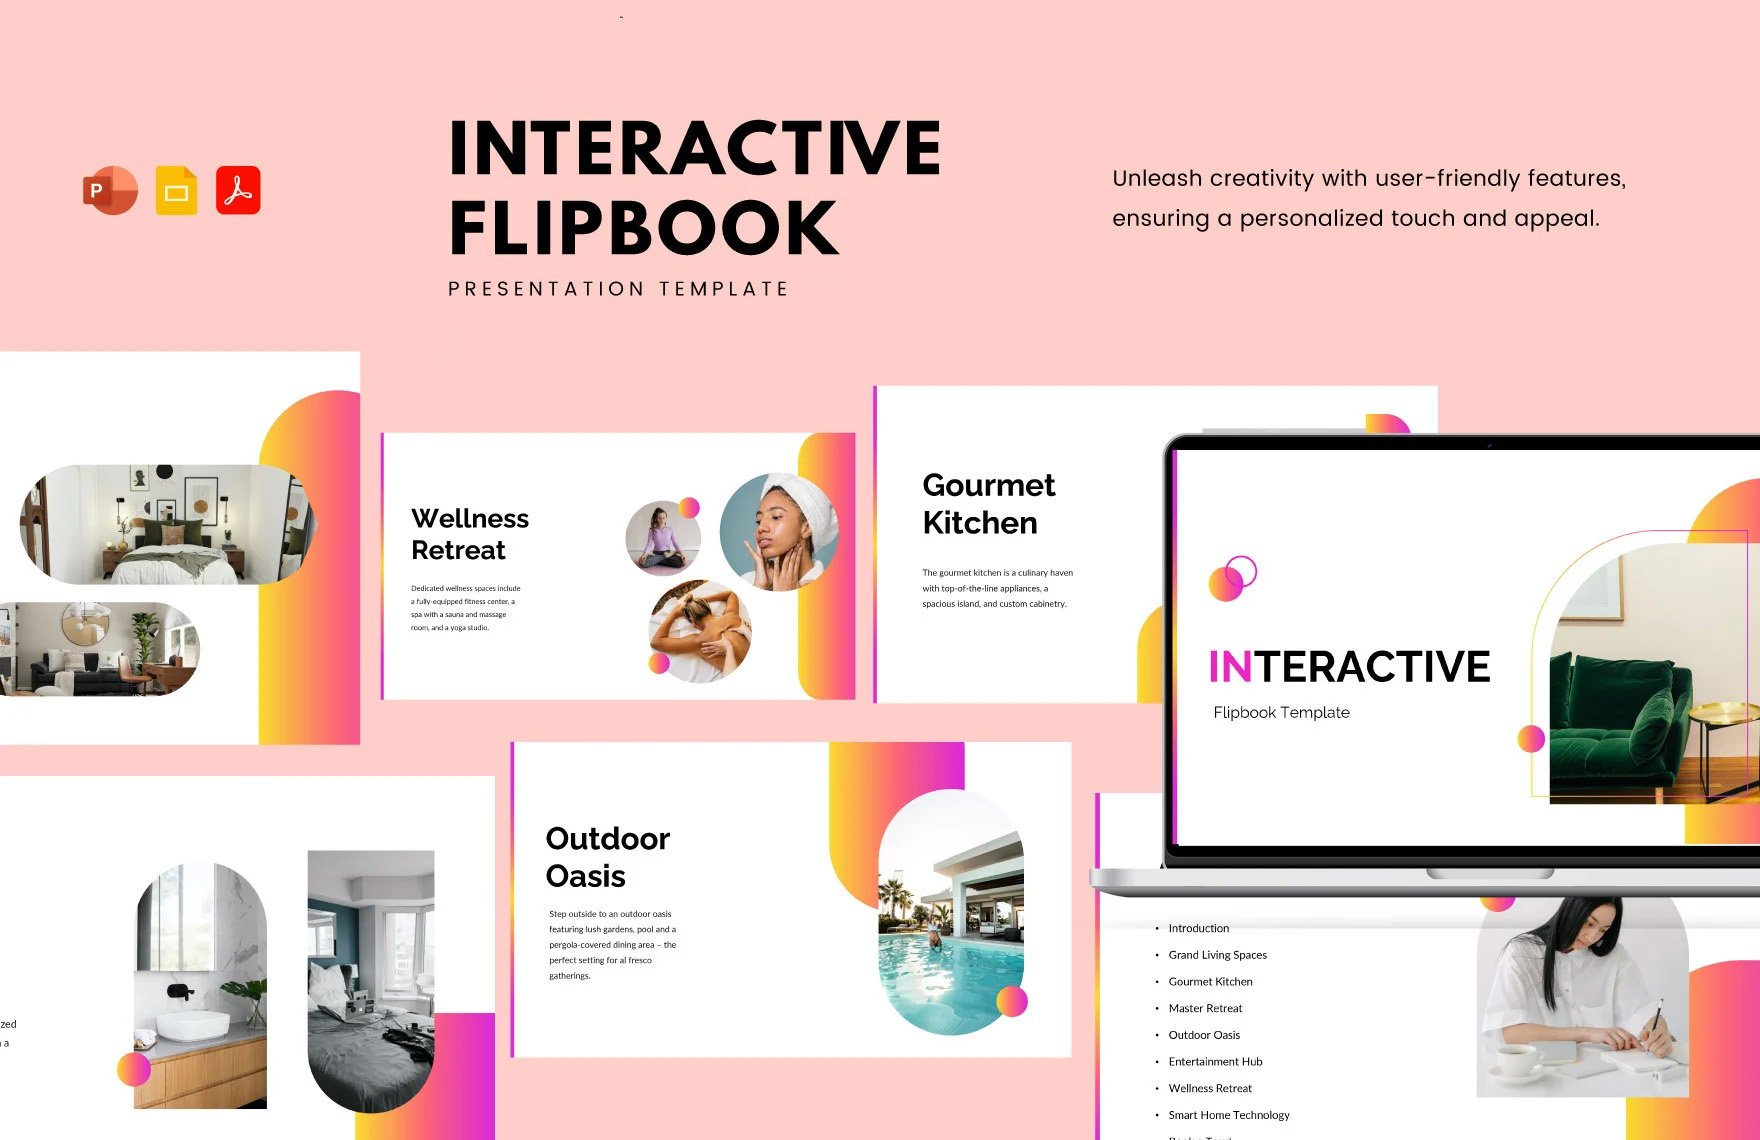 Interactive Flipbook Template